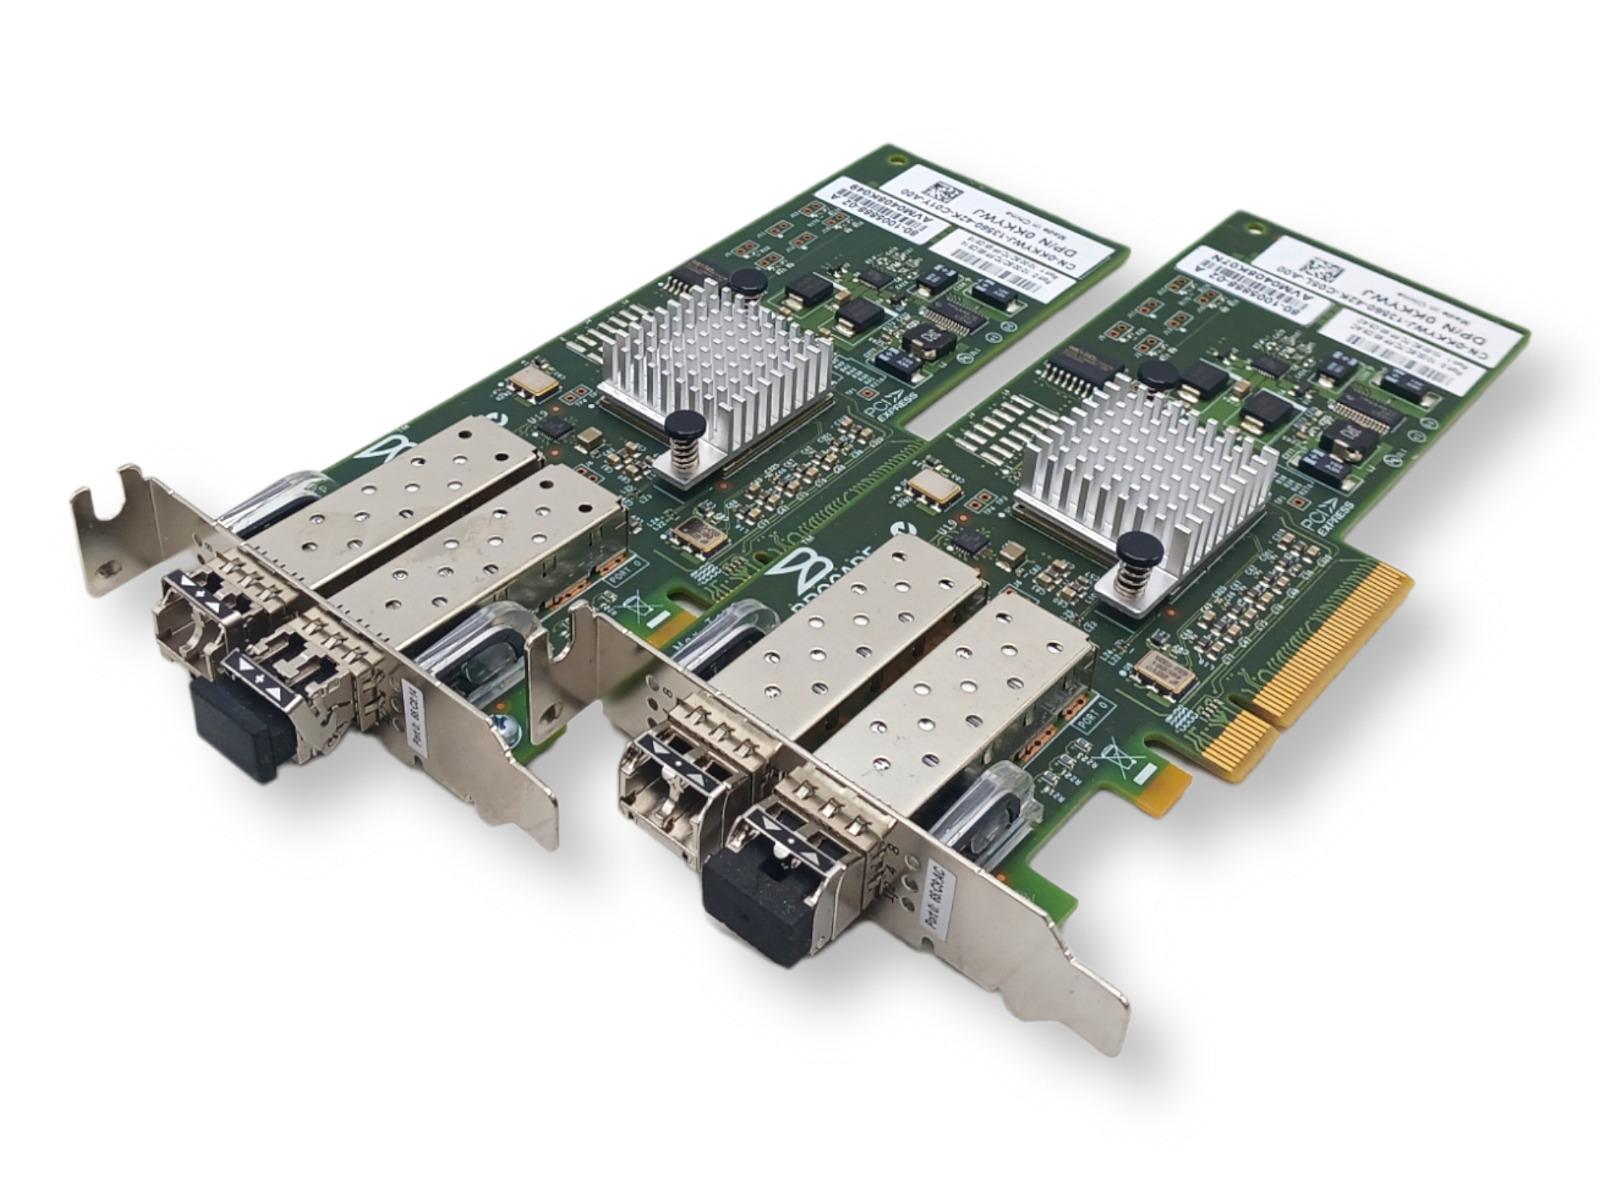 (2) Dell Brocade 8 Gb/s 2-Port PCIe 2.0 x8 FIBRE CHANNEL HBA CARD 825 w/ 2SPF